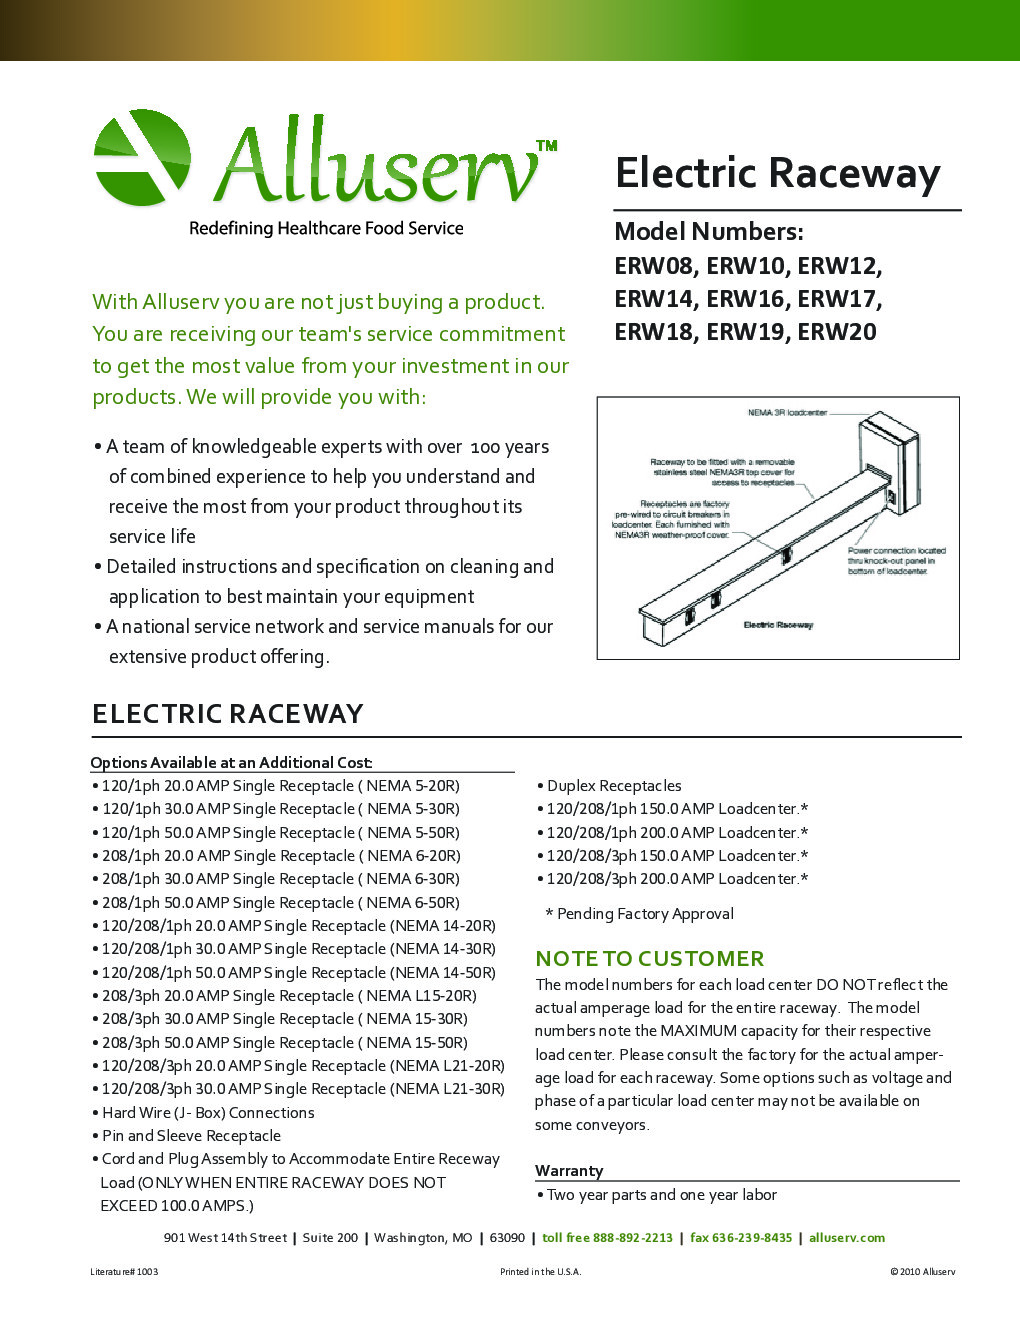 Alluserv ERW14 Electrical Raceway, 14 foot